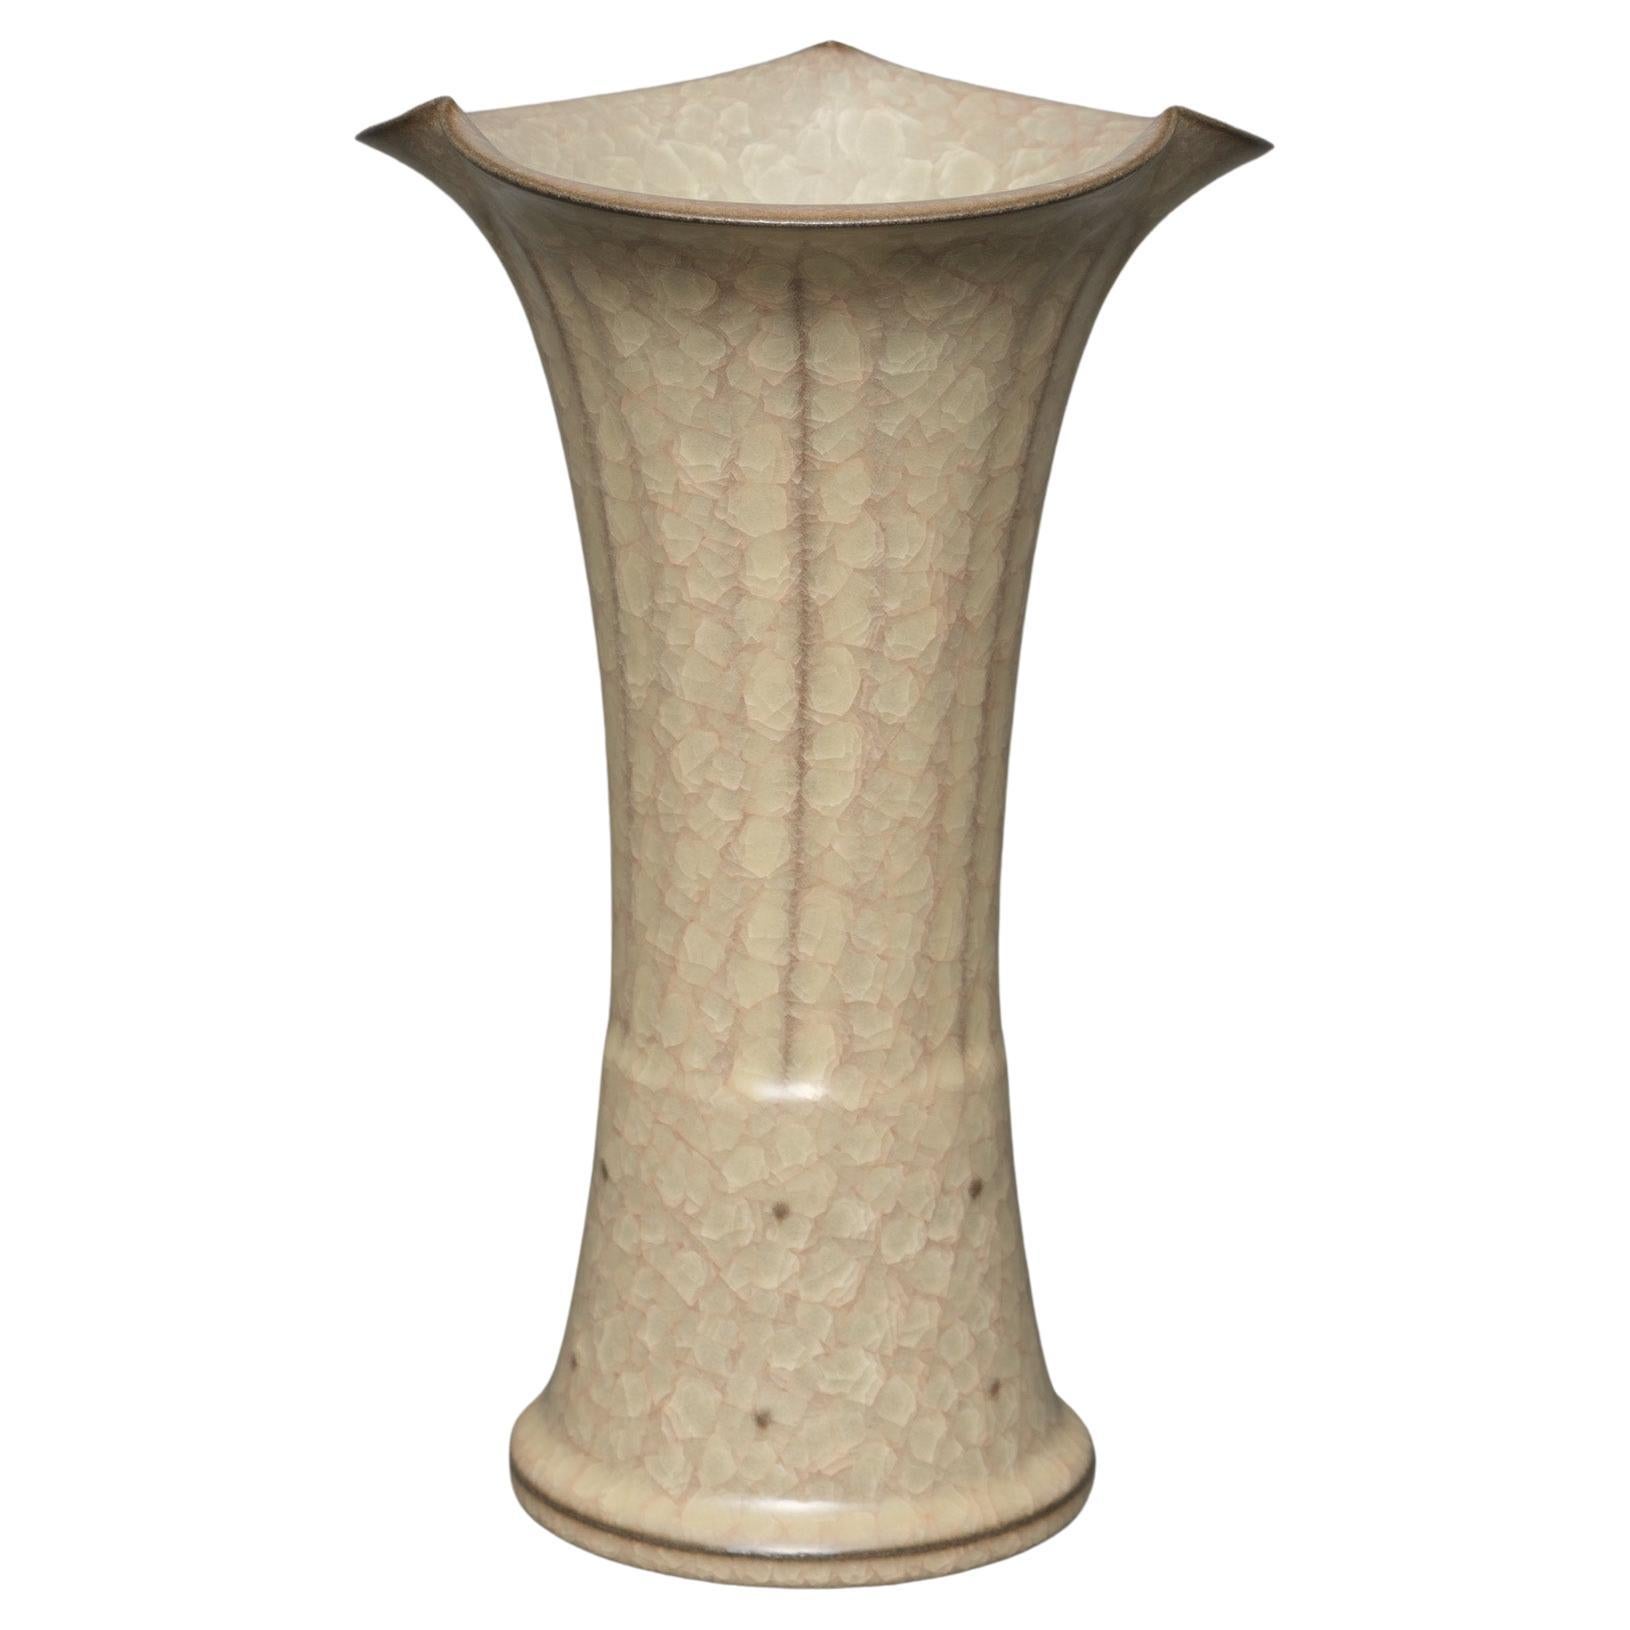 Japanese glazed stoneware 'gu'-shaped vase by Minegishi Seikô 峯岸勢晃 (1952-2023)